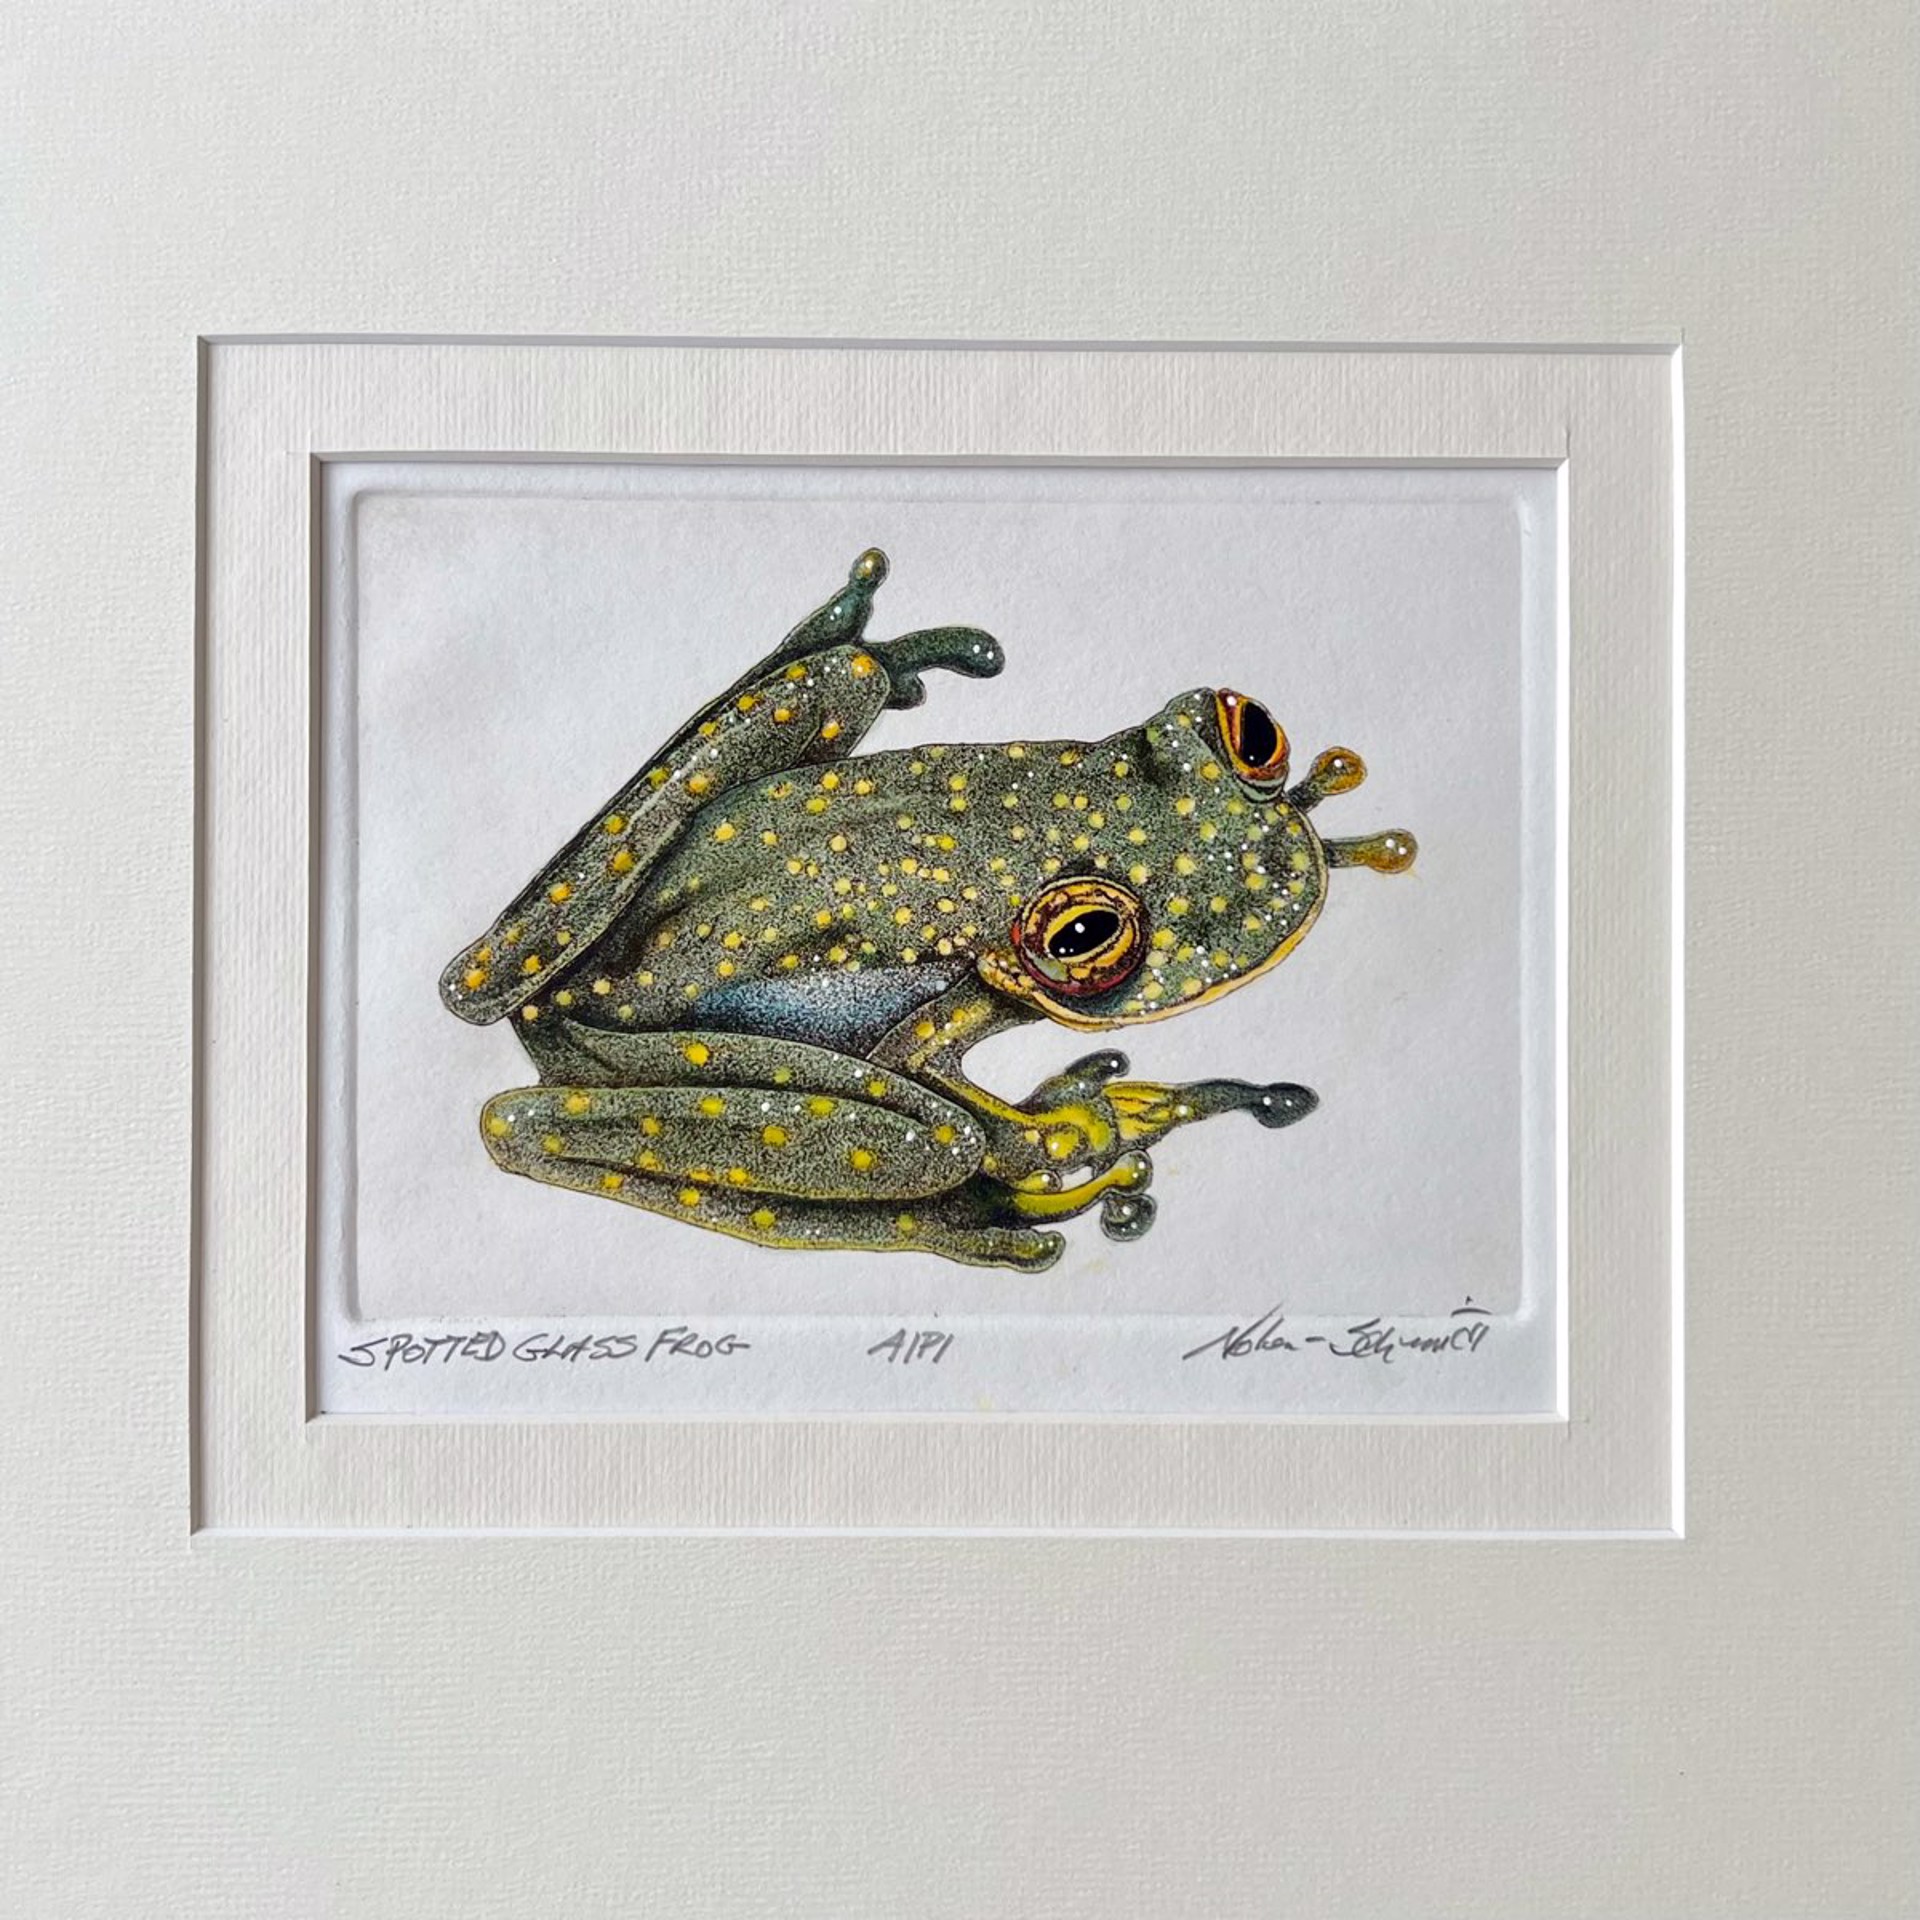 Spotted Grass Frog by William Nolen-Schmidt